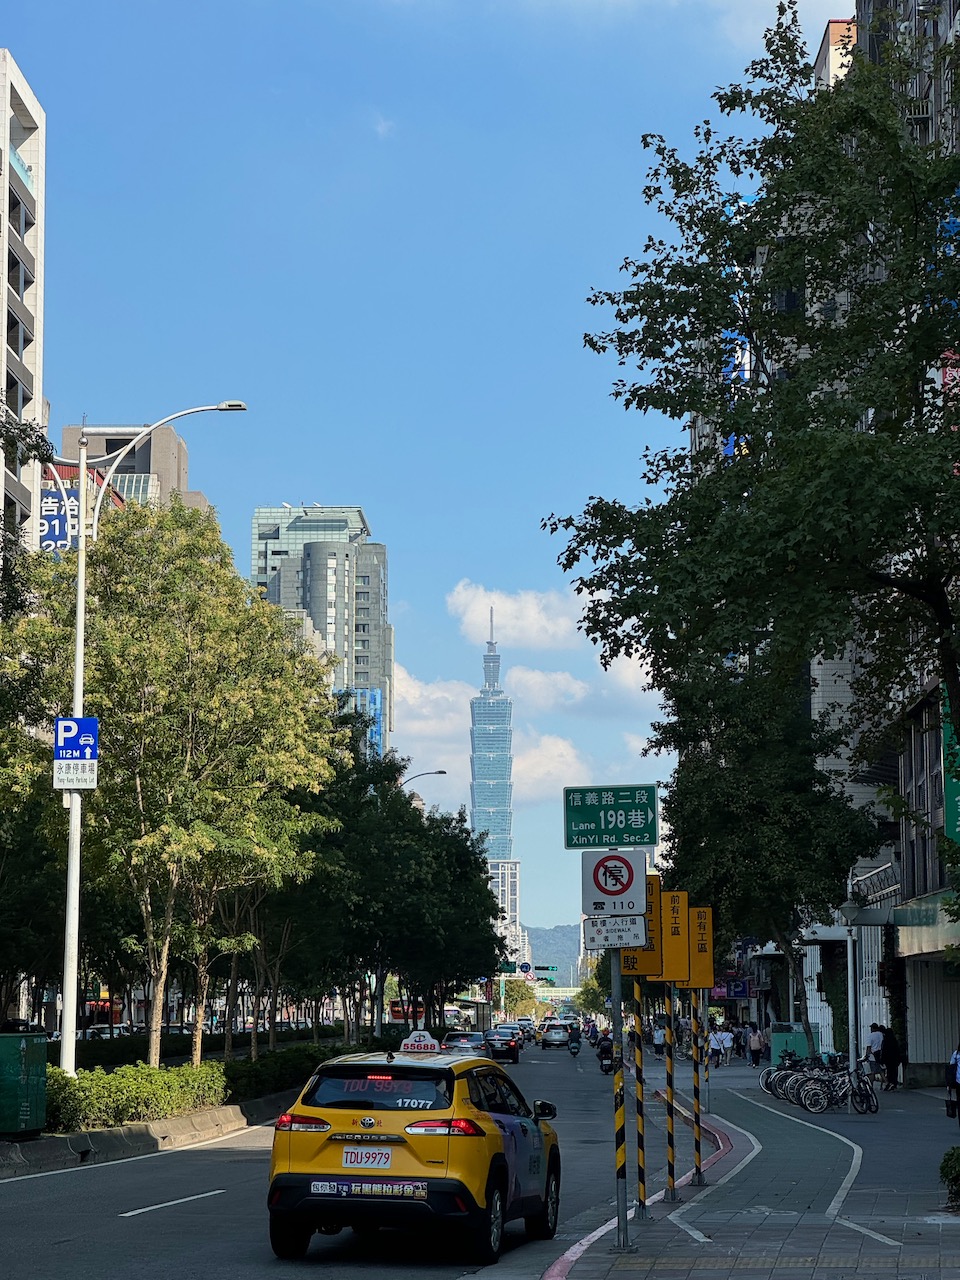 The Taipei 101 tower